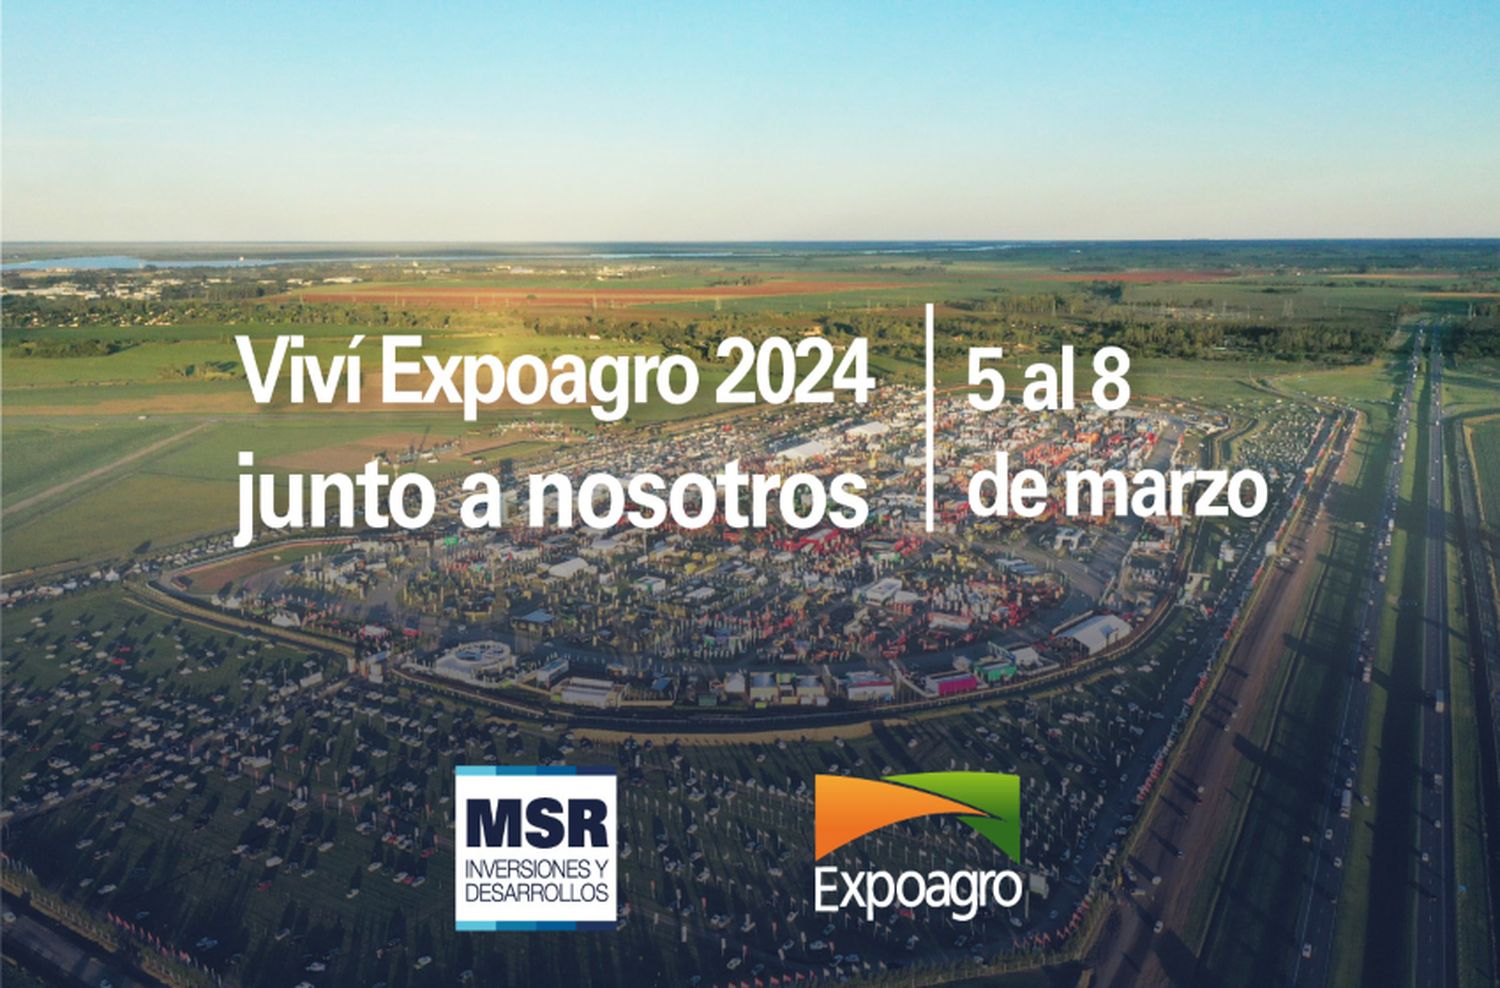 MSR Inversiones y Desarrollos participará de Expoagro 2024